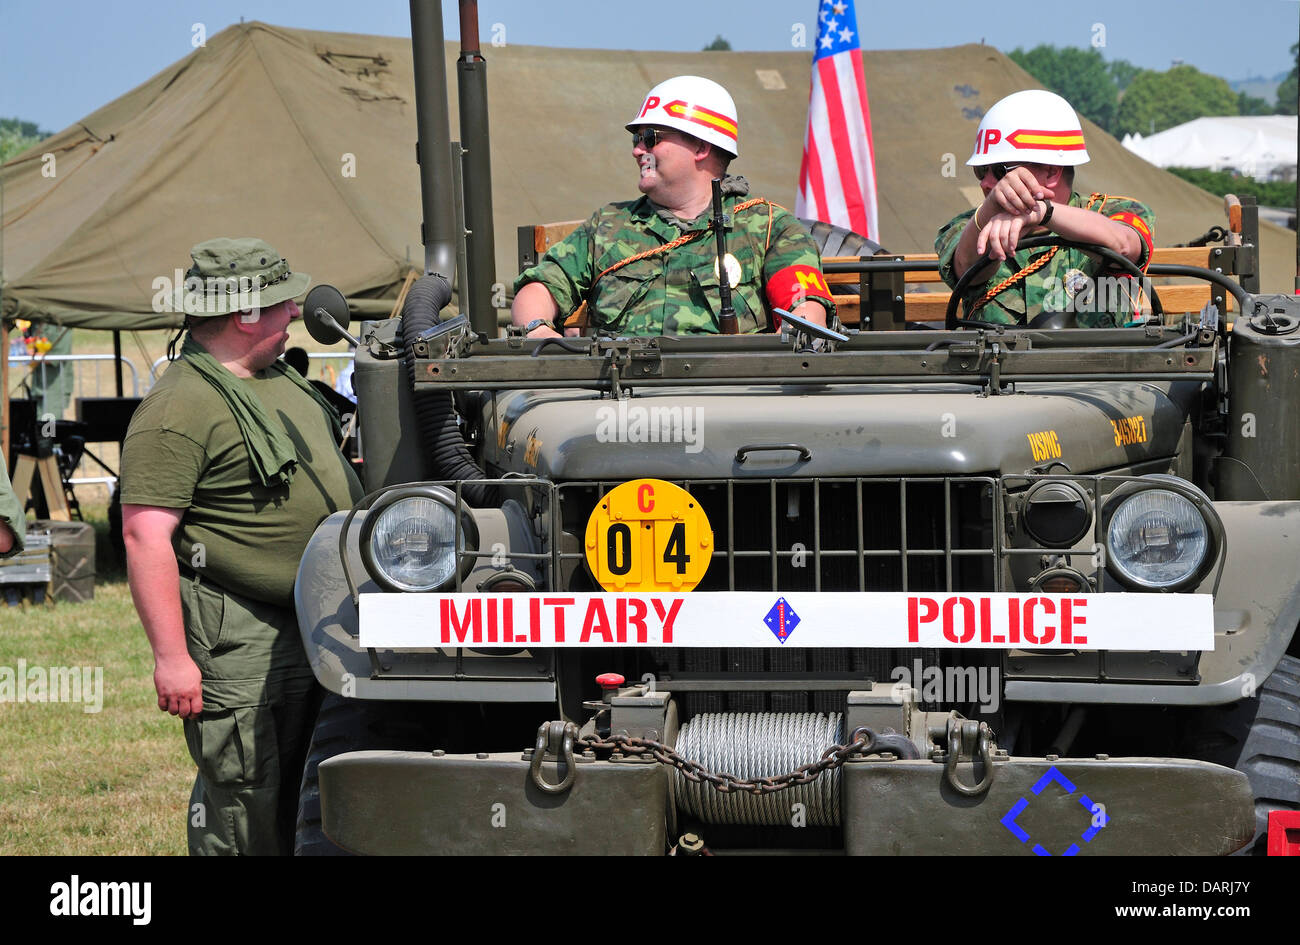 La Police militaire américaine en jeep. Reprise de la guerre et de la paix, juillet 2013. Hippodrome de Folkestone, Kent, Angleterre, Royaume-Uni. Banque D'Images